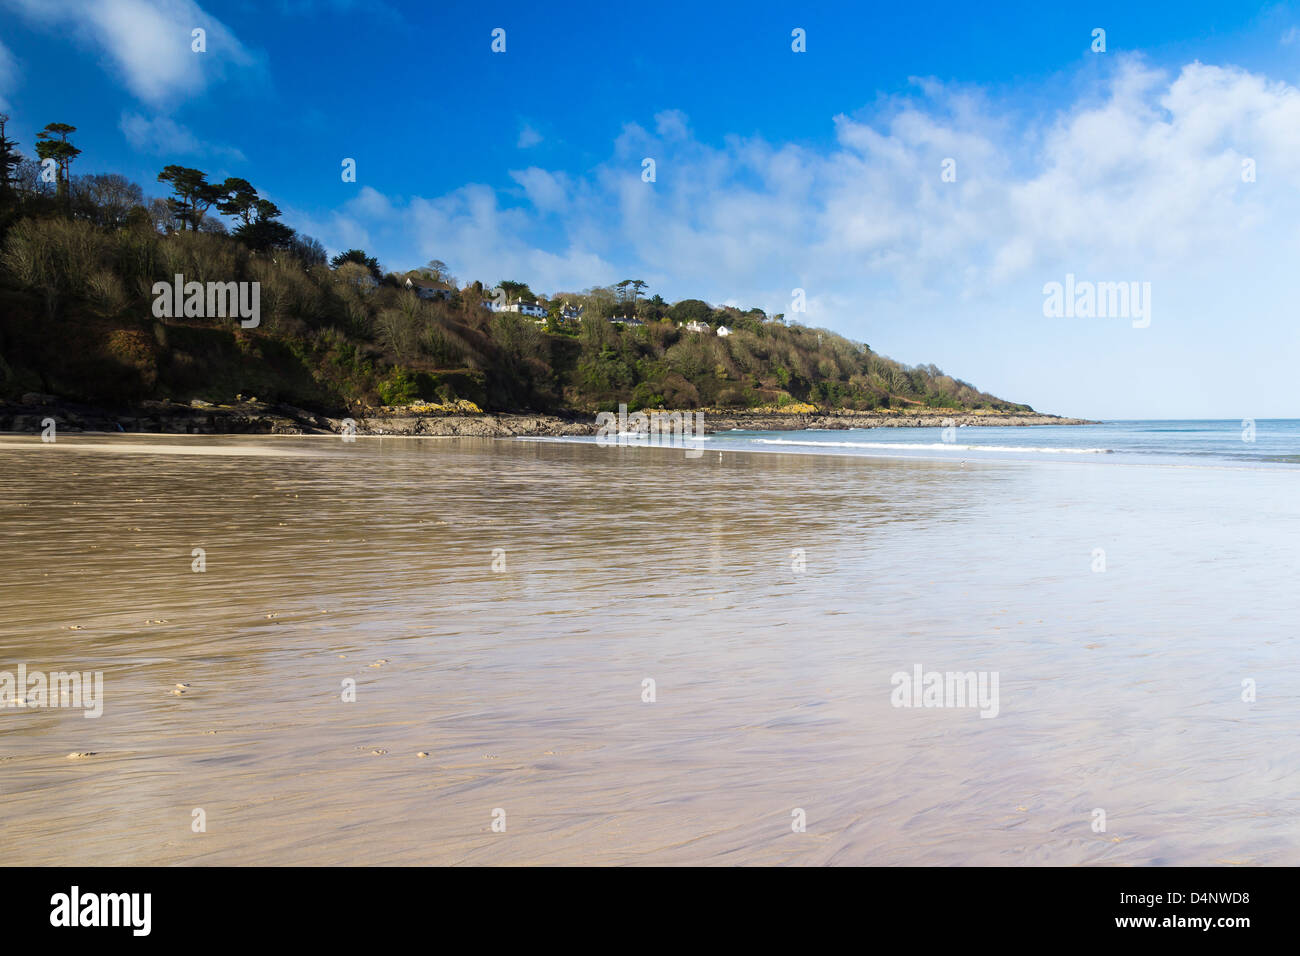 La bellissima spiaggia sabbiosa di Carbis Bay vicino a St Ives Cornwall Inghilterra REGNO UNITO Foto Stock